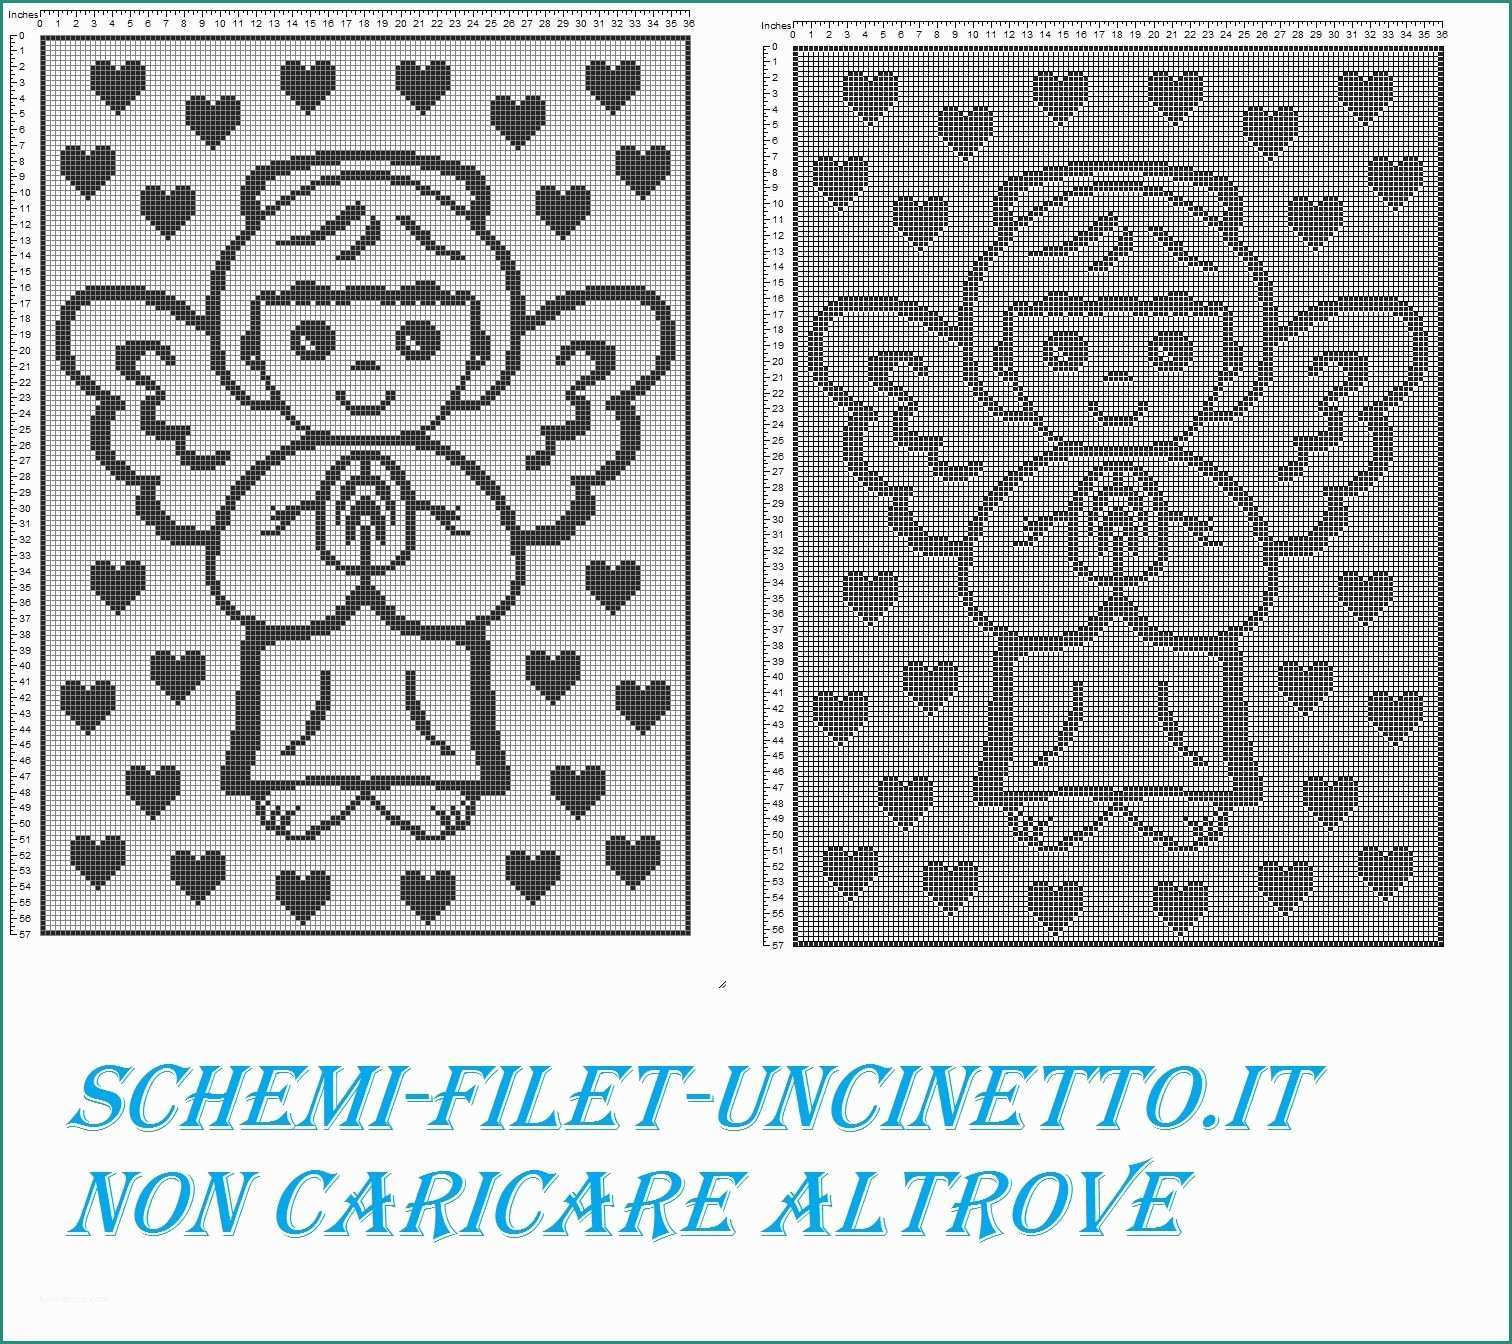 Copertina Neonato Uncinetto E 37c020d Afd D0c85cf2f5cd Filet Uncinetto T